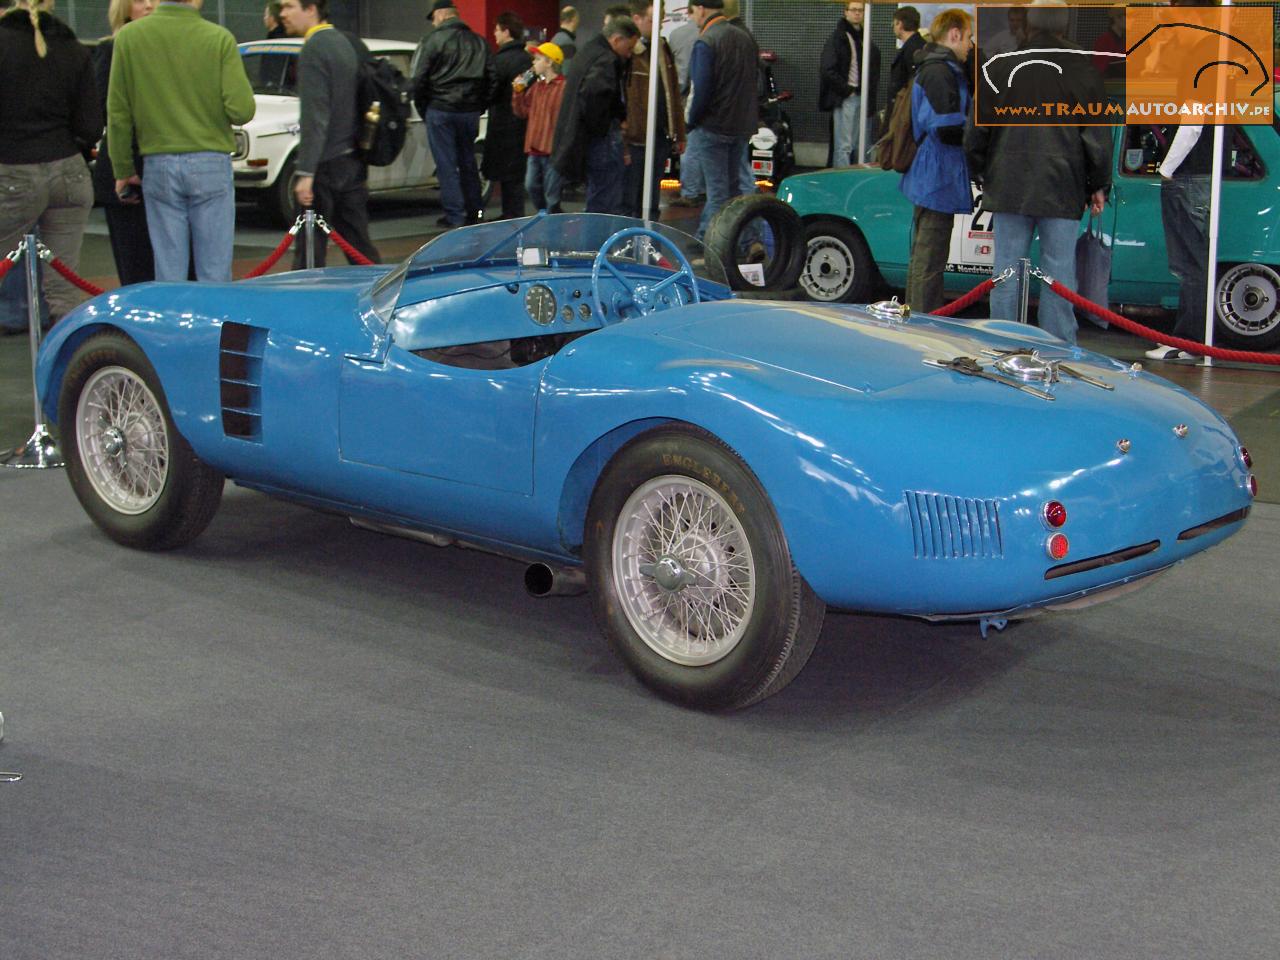 _CG Gordini Type 20 S '1954.jpg 167.5K